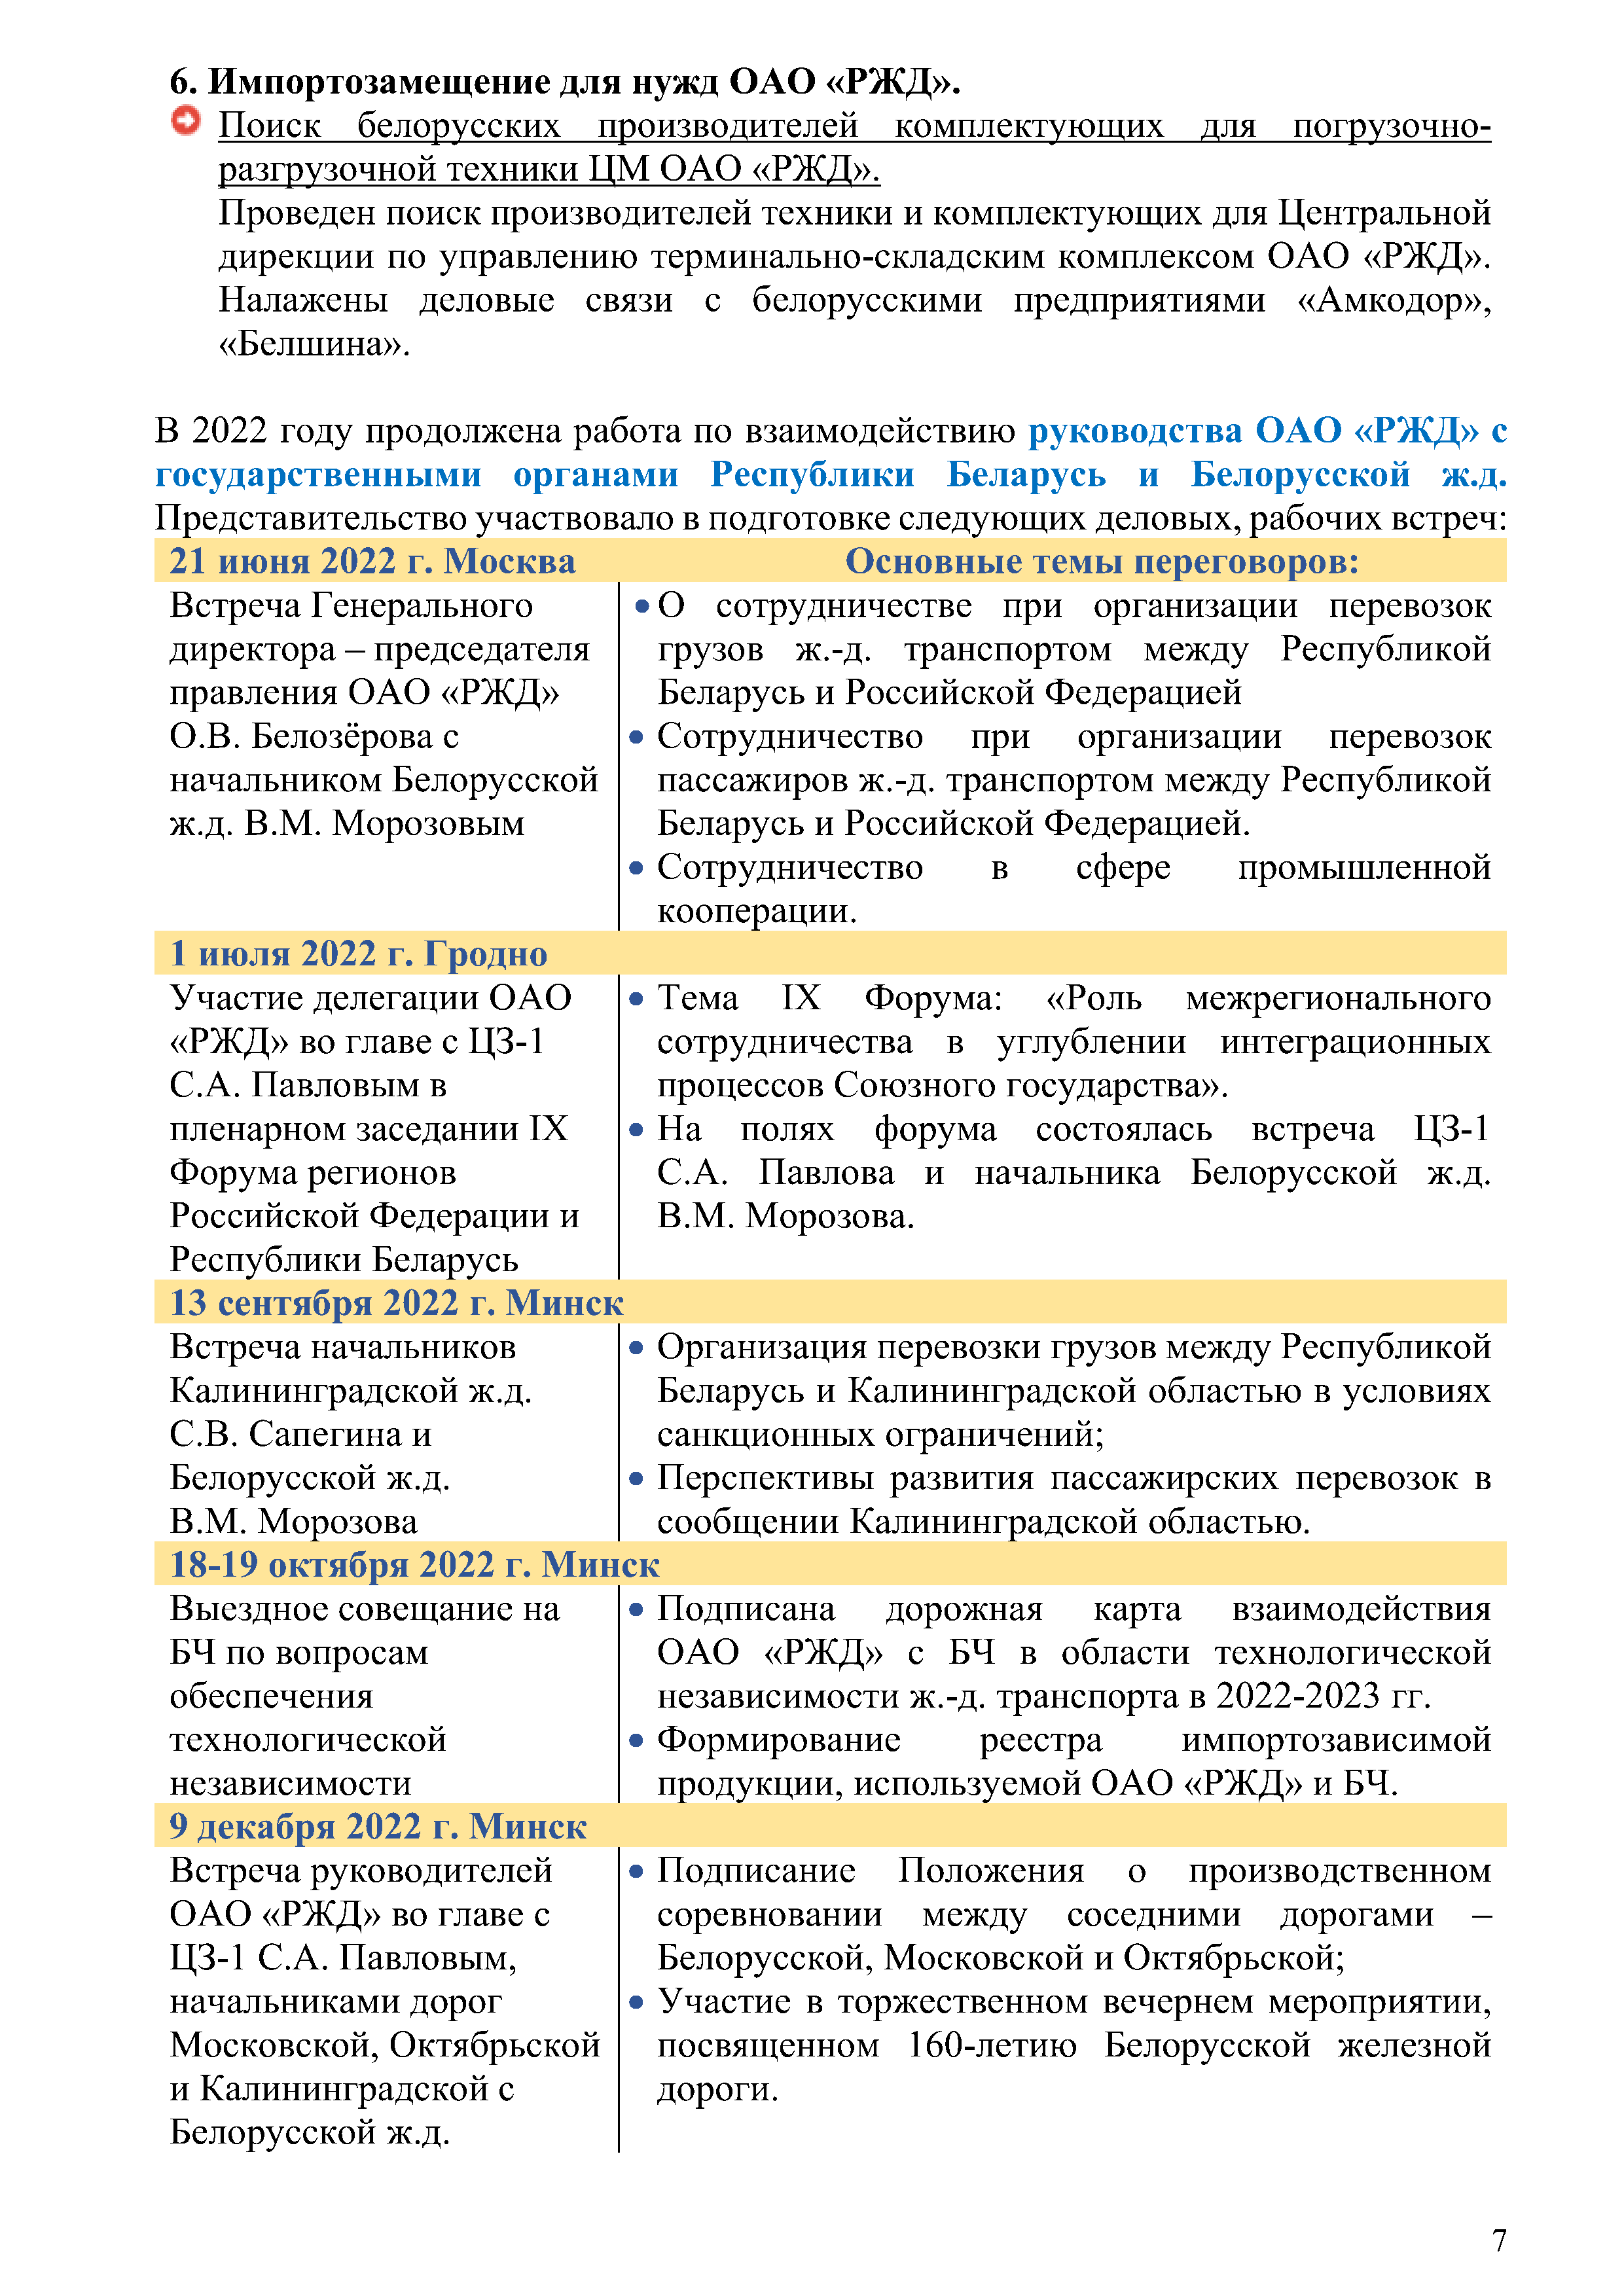 Отчет о работе представительства ОАО «РЖД» в Республике Беларусь за 2022 год (Страница 6)